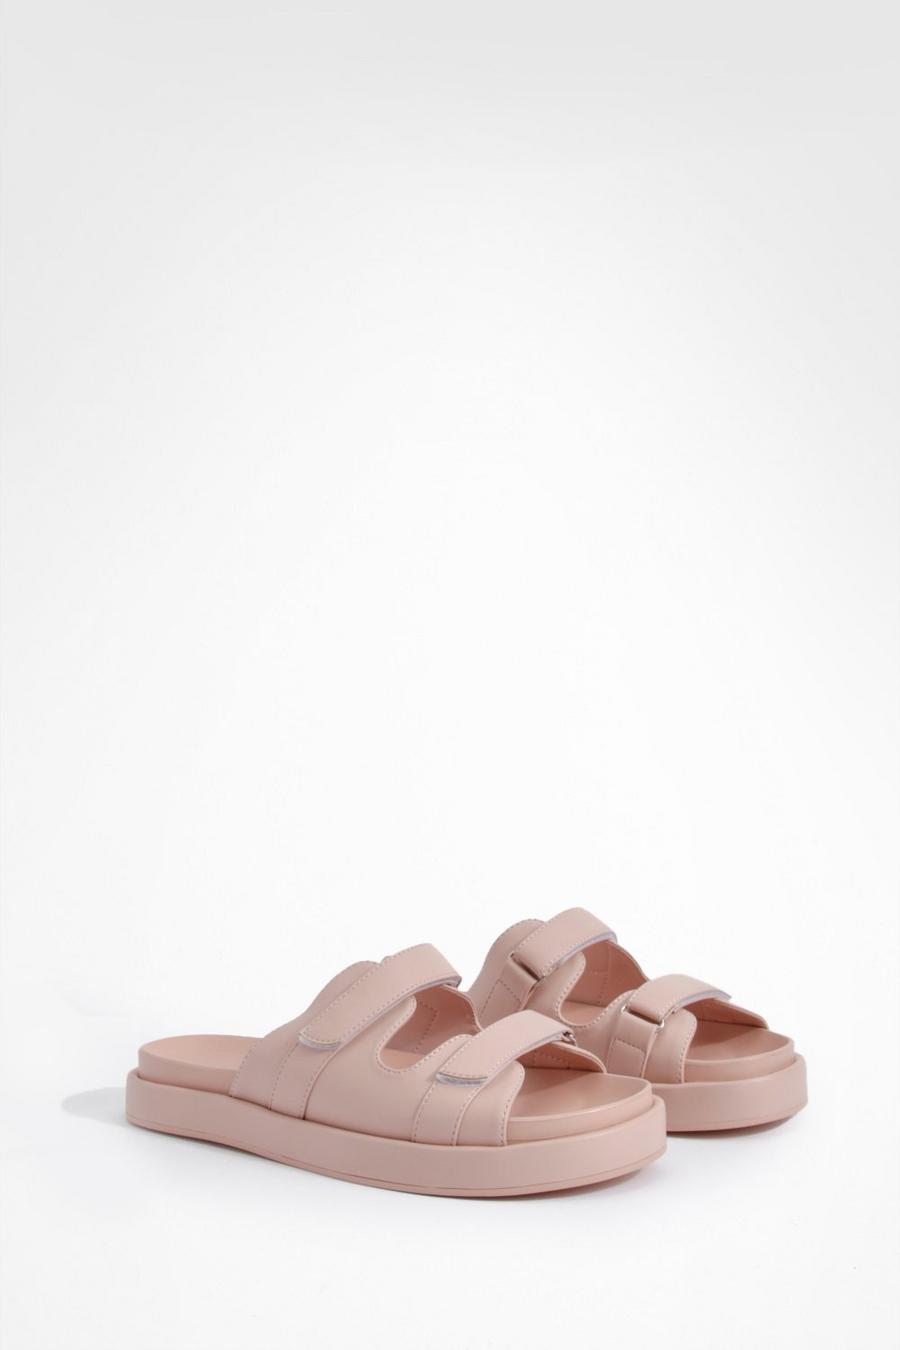 Sandalias de cuero sintético con estampado de goma, Light pink